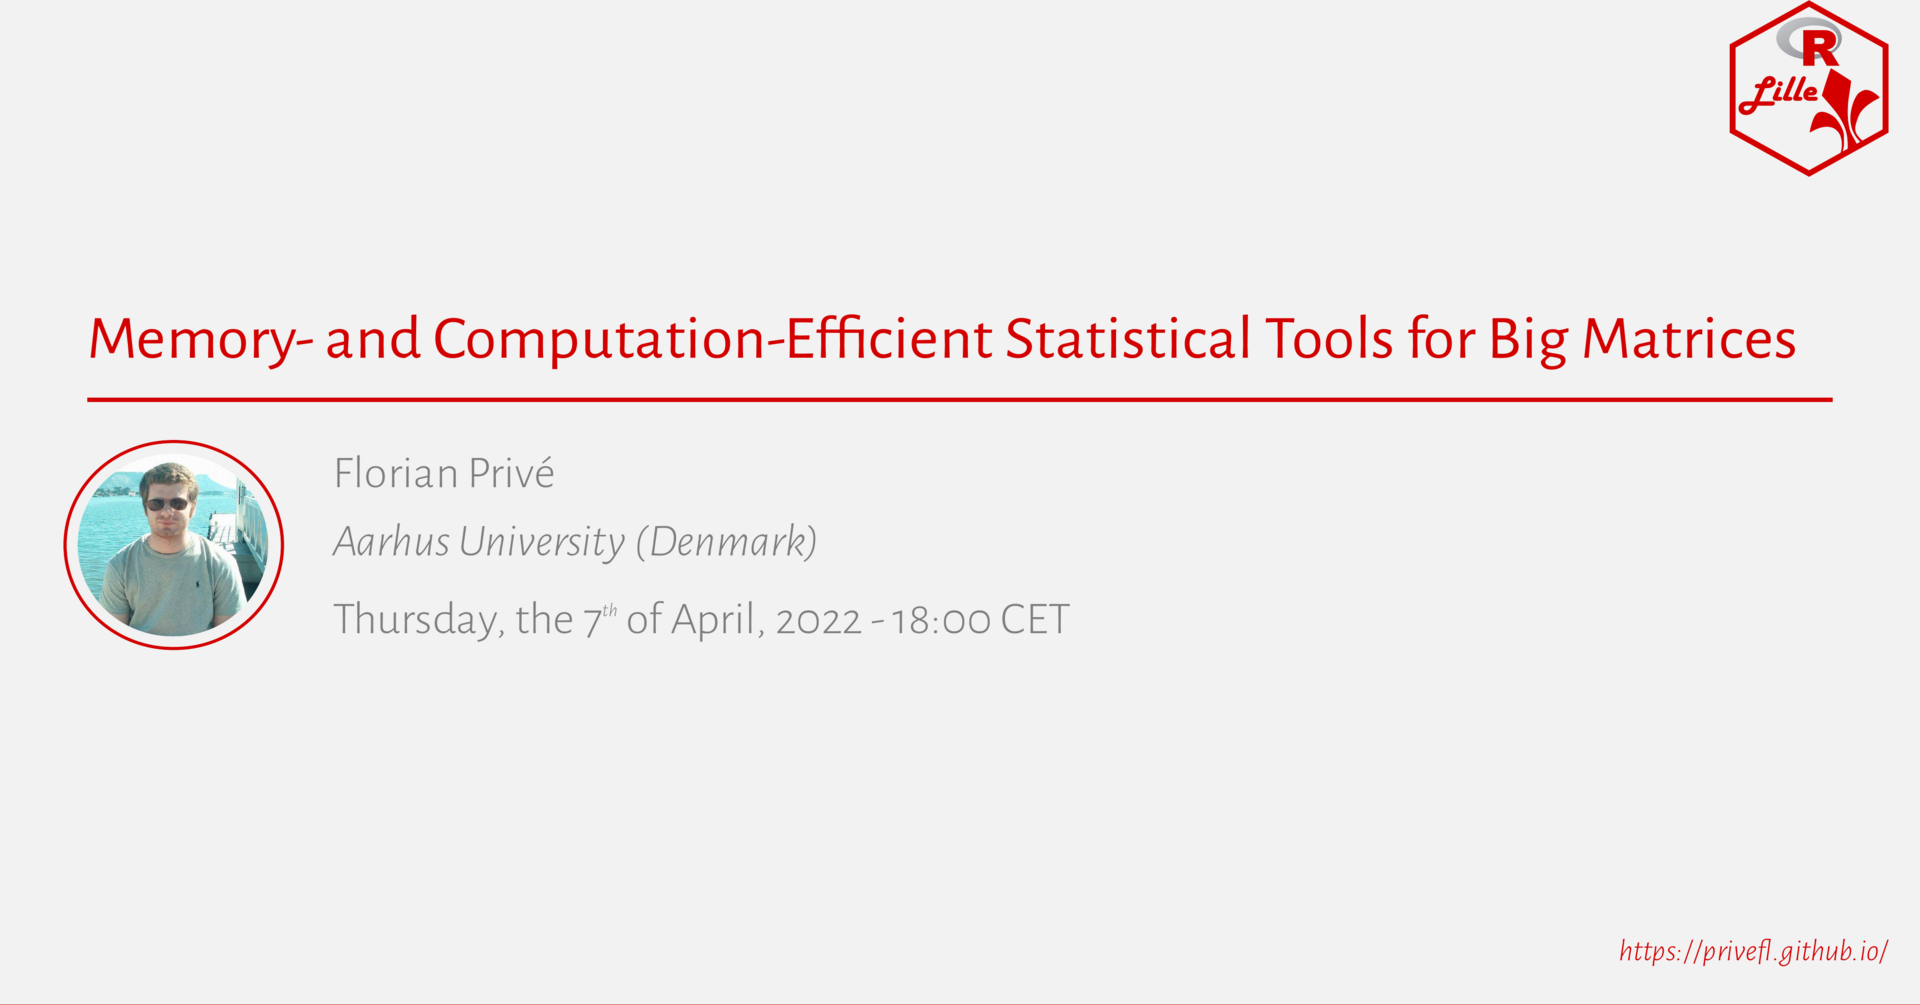 Affiche de &#039;Memory- and Computation-Efficient Statistical Tools for Big Matrices',
un Meetup par Florian Privé,
tenu le 7 avril 2022
